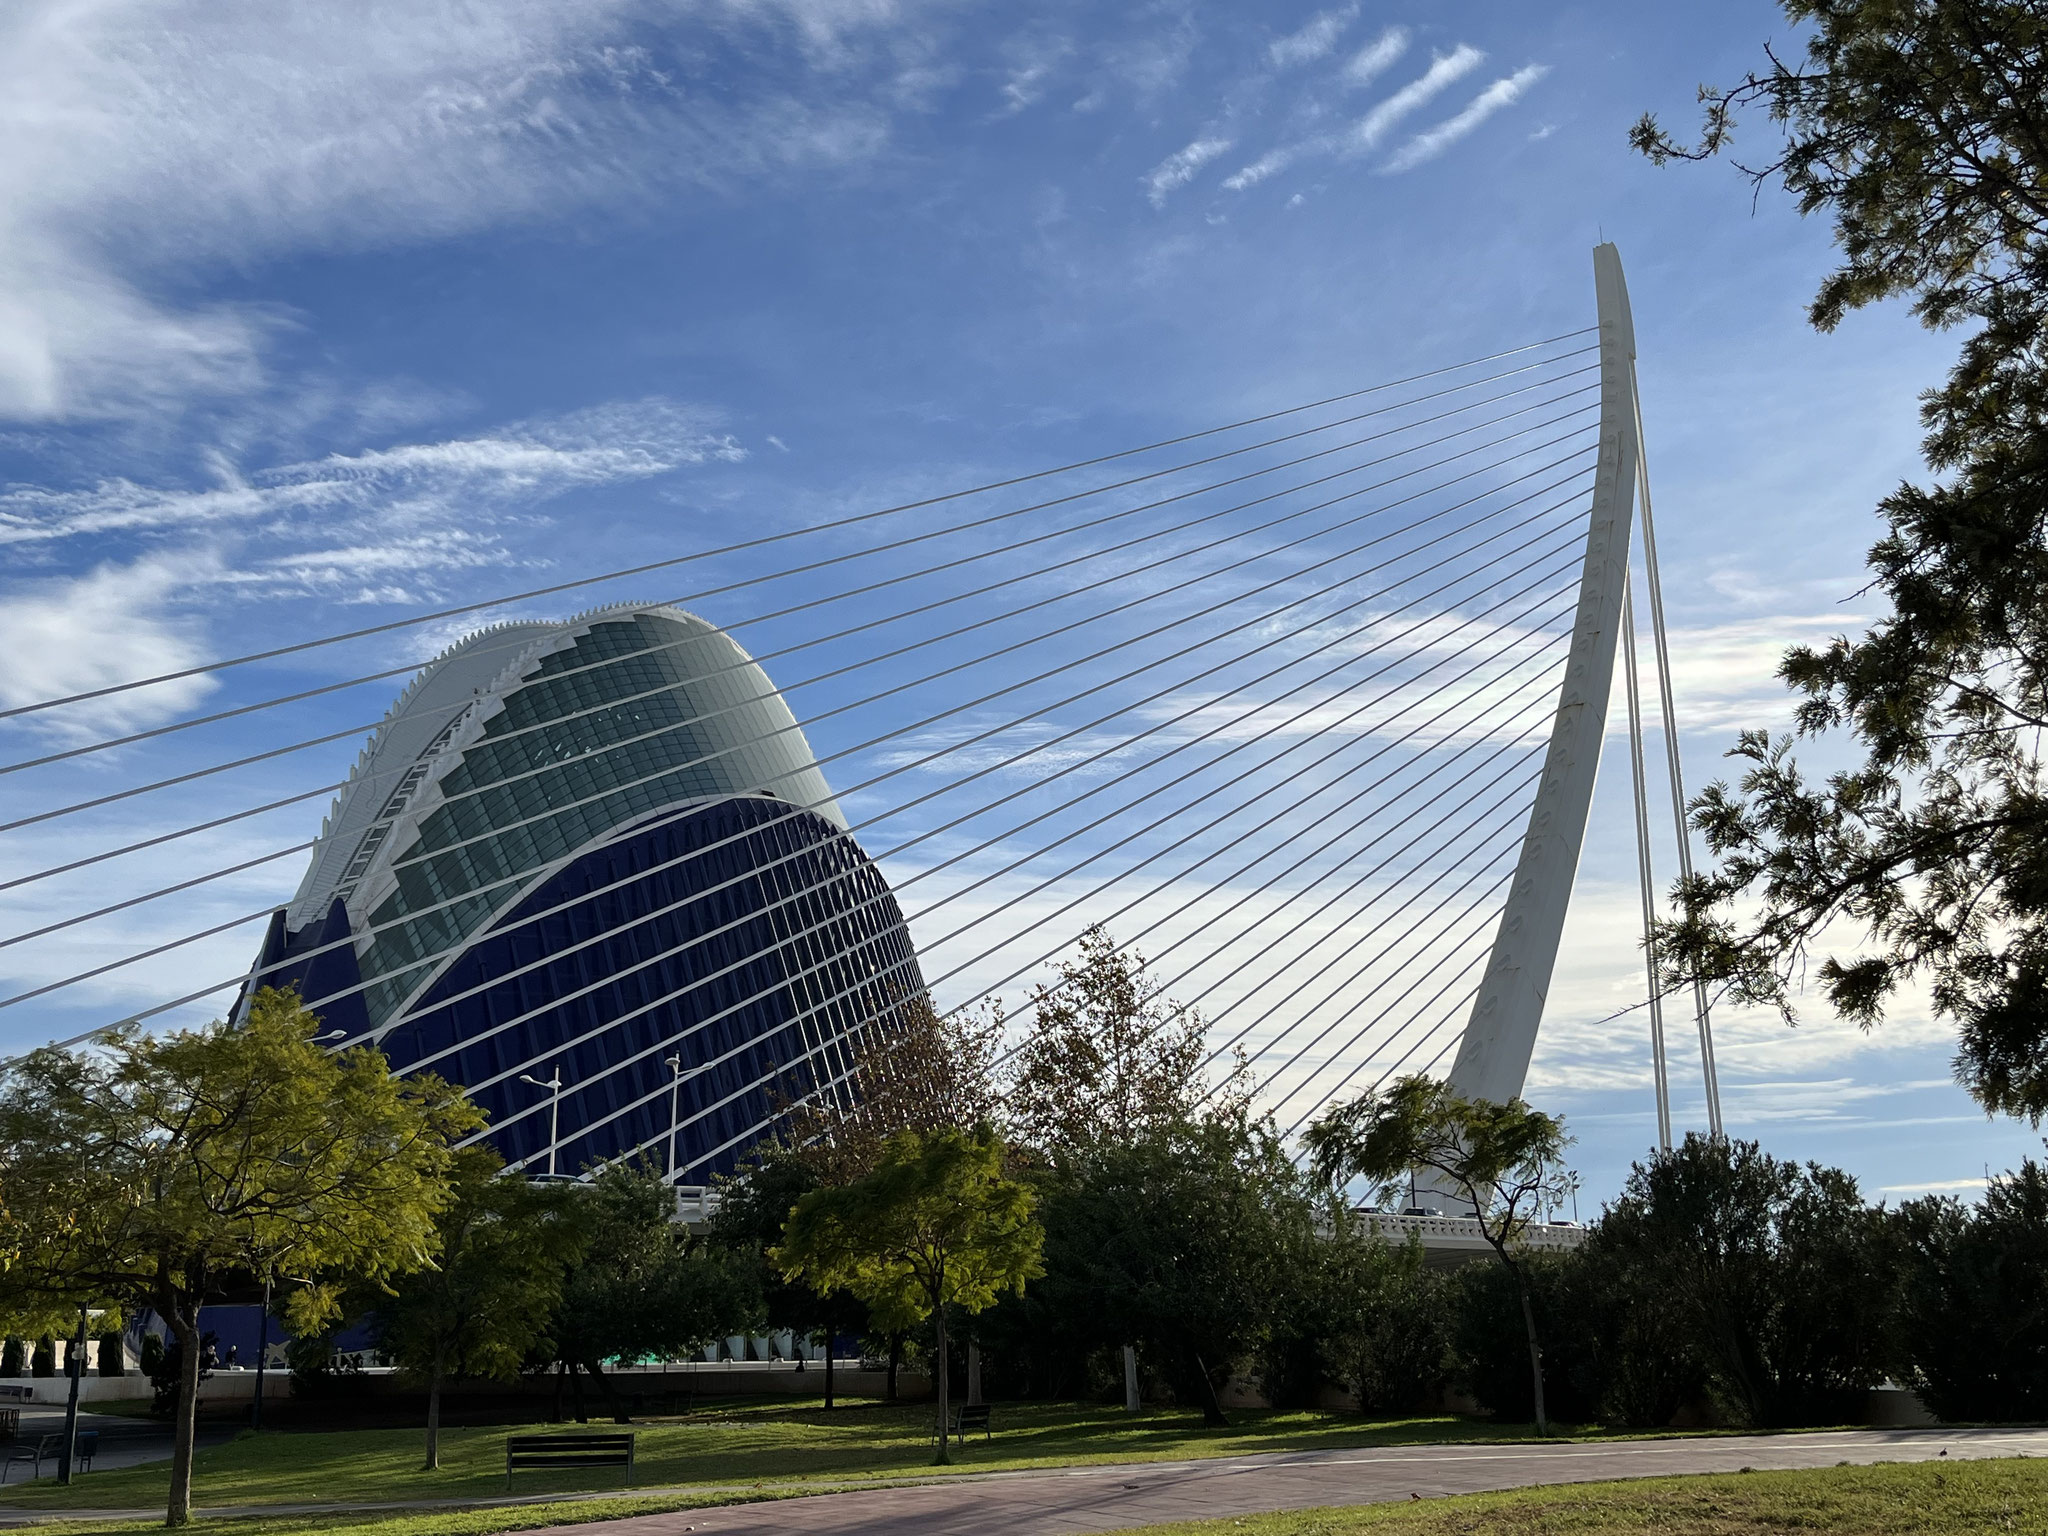 Nach dem Einchecken zieht es uns sofort runter zu den Parkanlagen mit den wunderbaren Bauten von Calatrava.